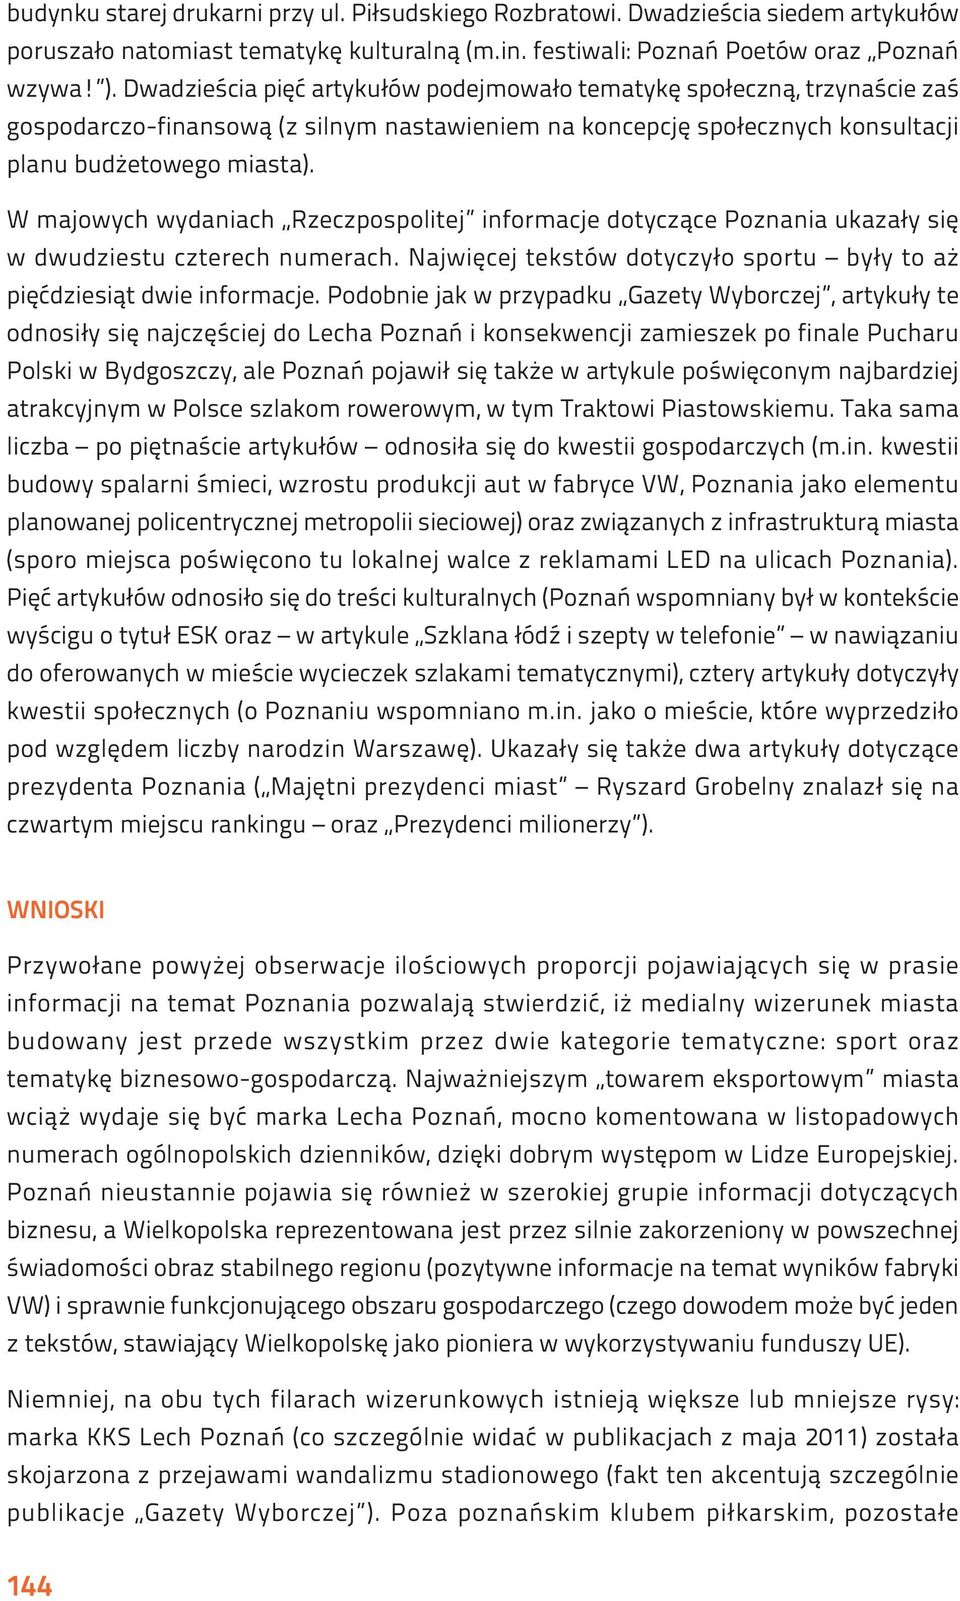 W majowych wydaniach Rzeczpospolitej informacje dotyczące Poznania ukazały się w dwudziestu czterech numerach. Najwięcej tekstów dotyczyło sportu były to aż pięćdziesiąt dwie informacje.